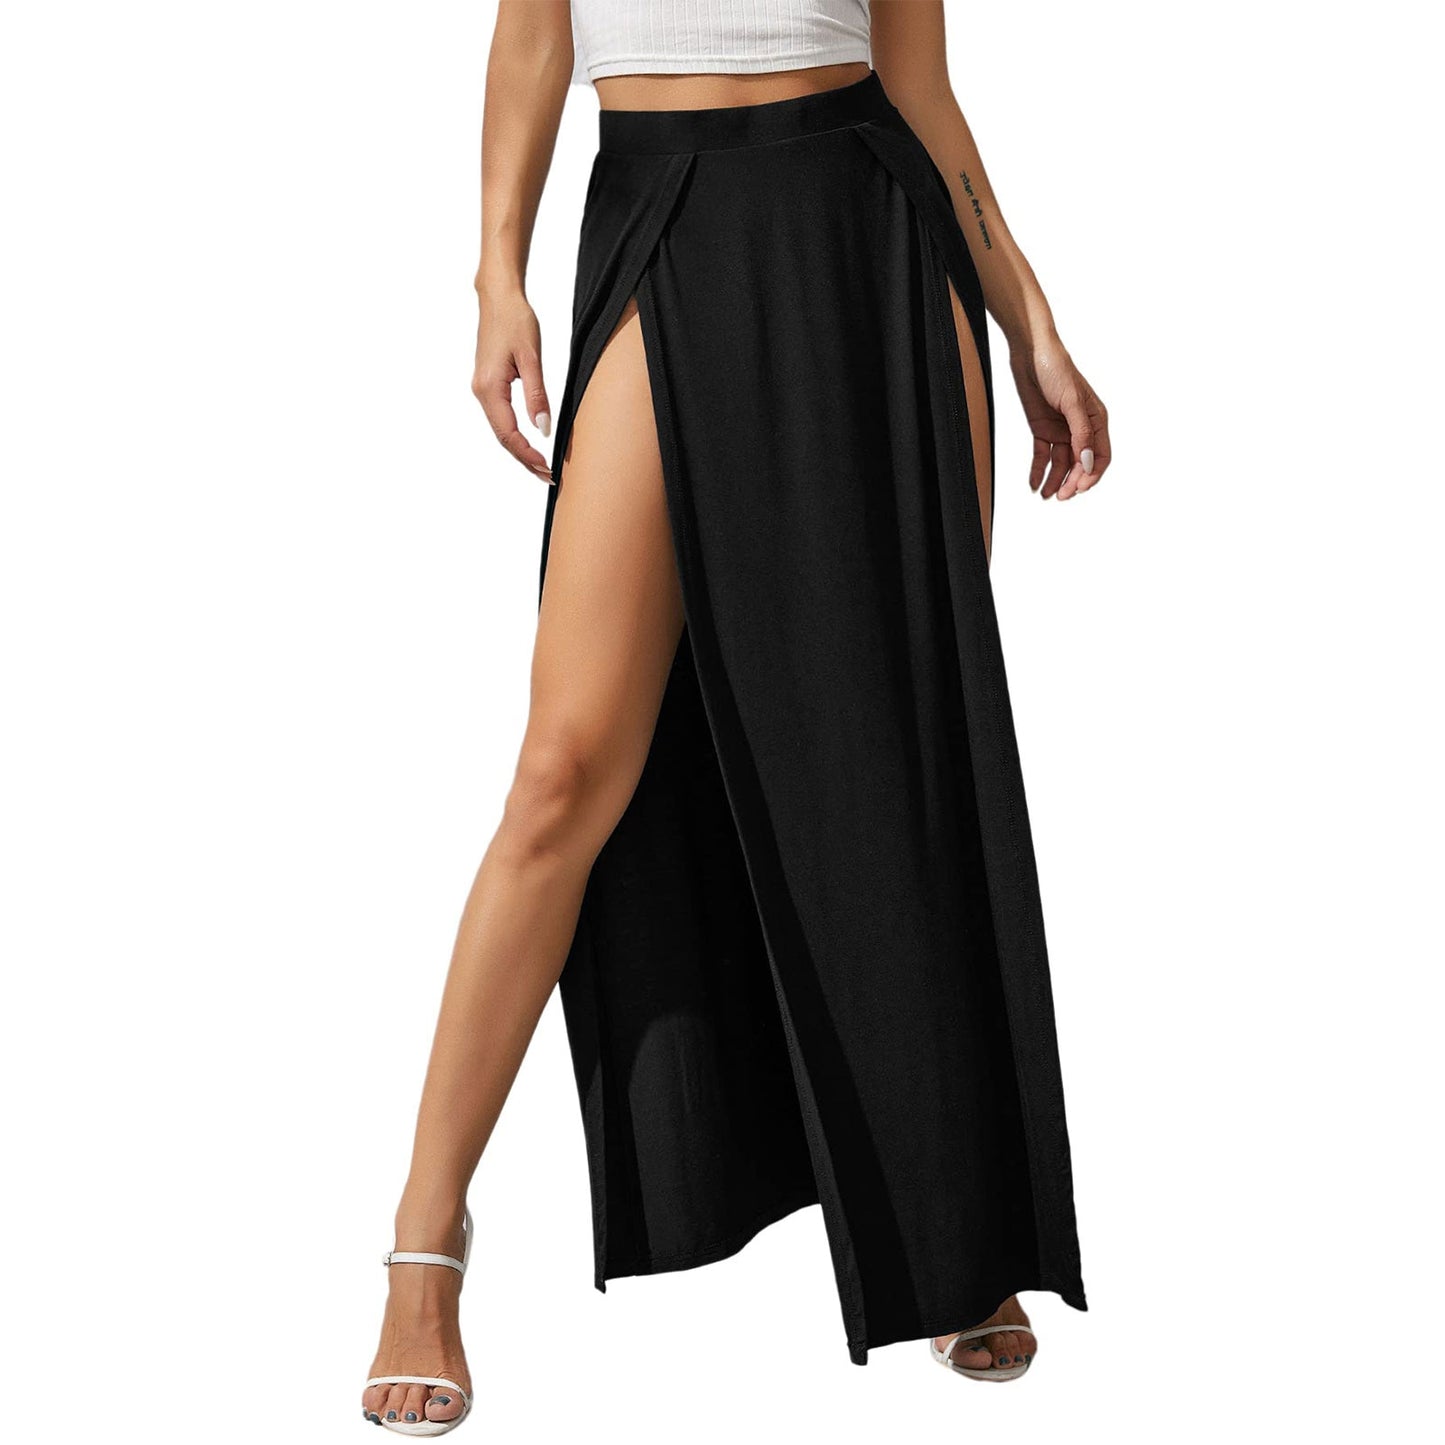 Casual High Split Long Skirt